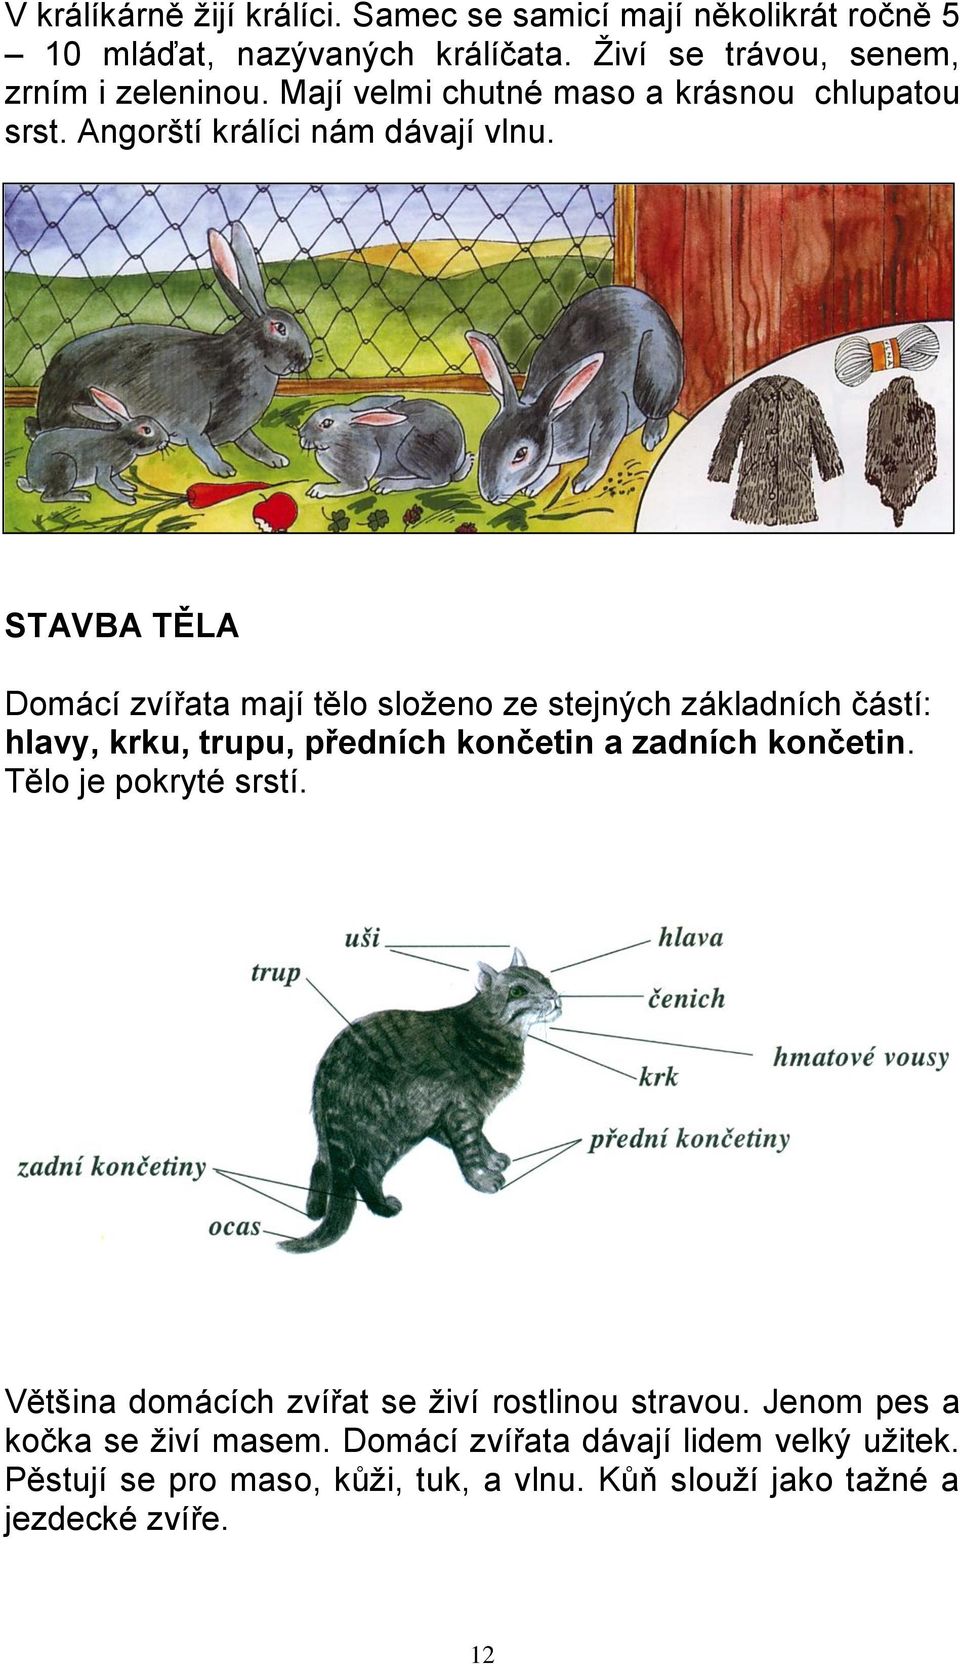 STAVBA TĚLA Domácí zvířata mají tělo složeno ze stejných základních částí: hlavy, krku, trupu, předních končetin a zadních končetin.